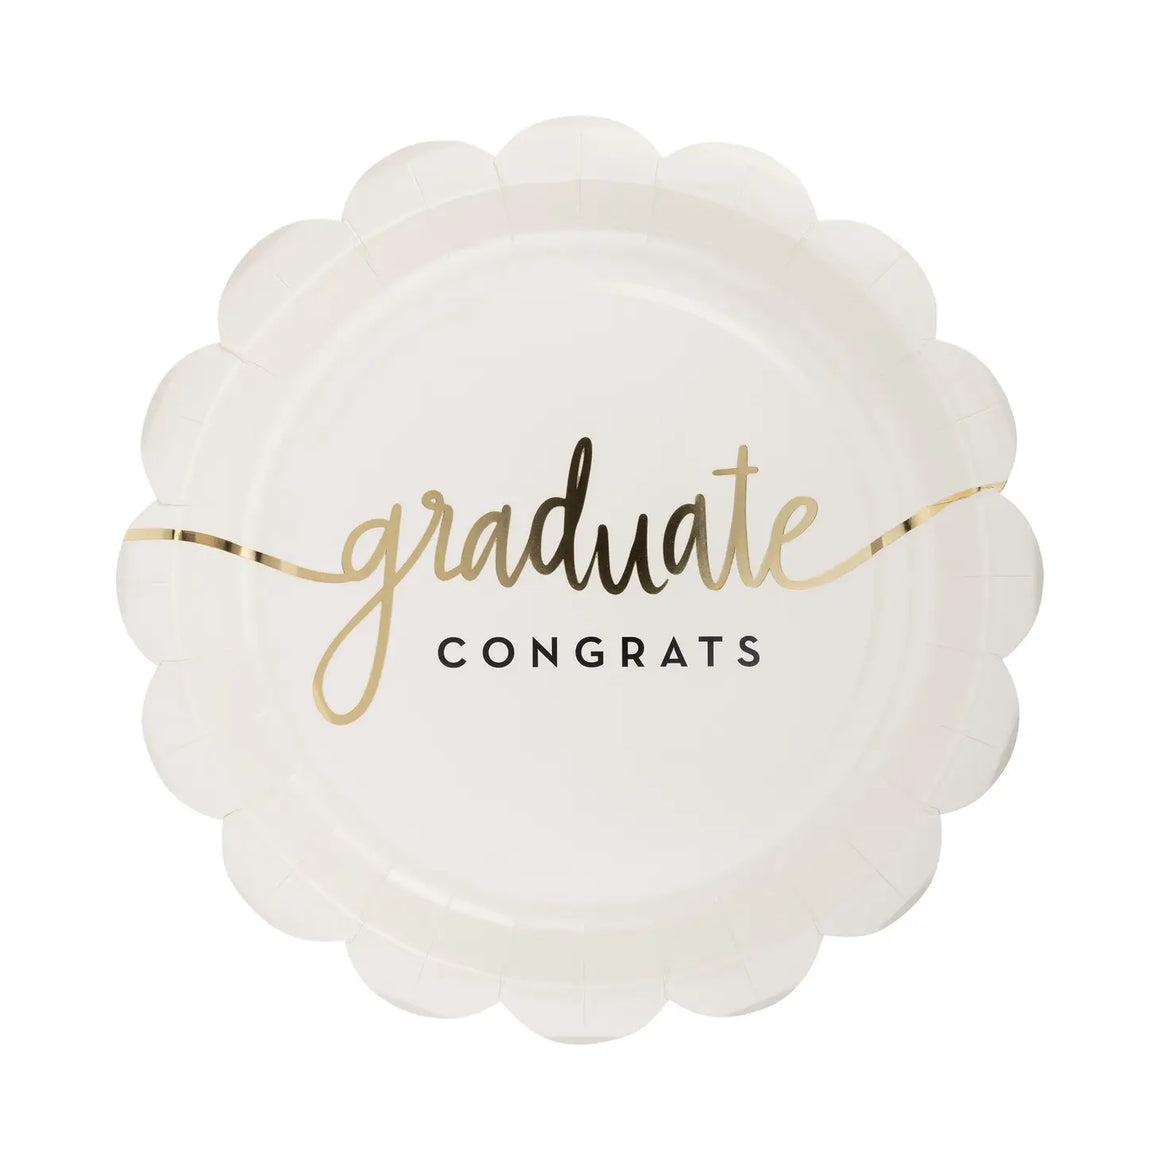 Graduate congrats plates